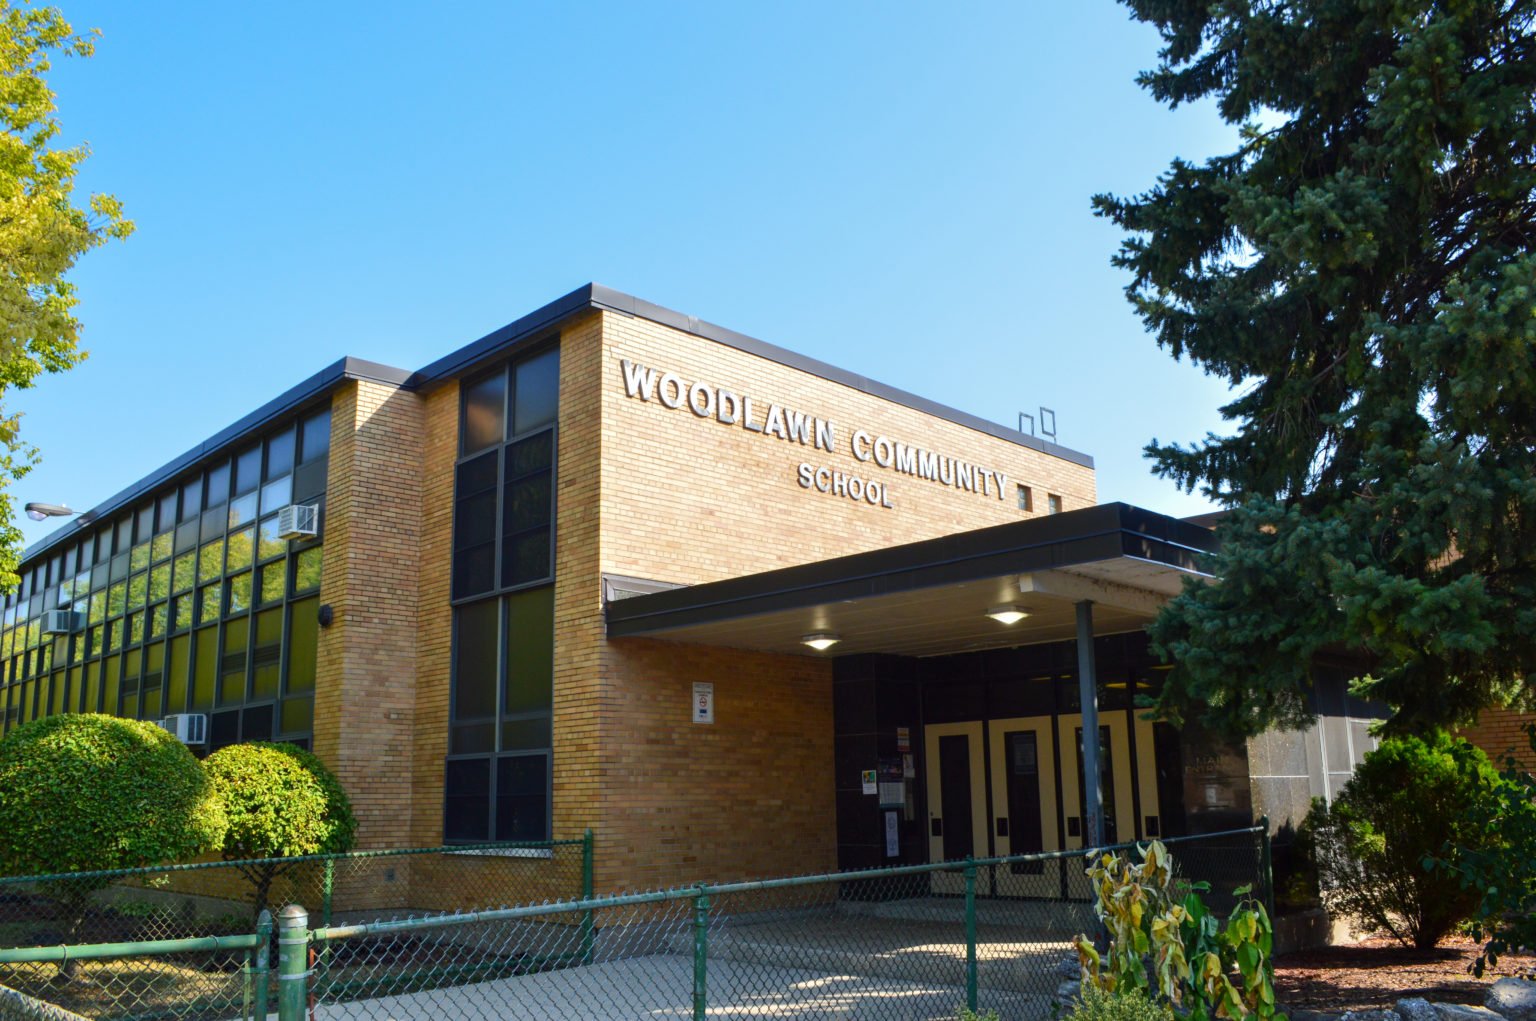 Woodlawn Community School Building